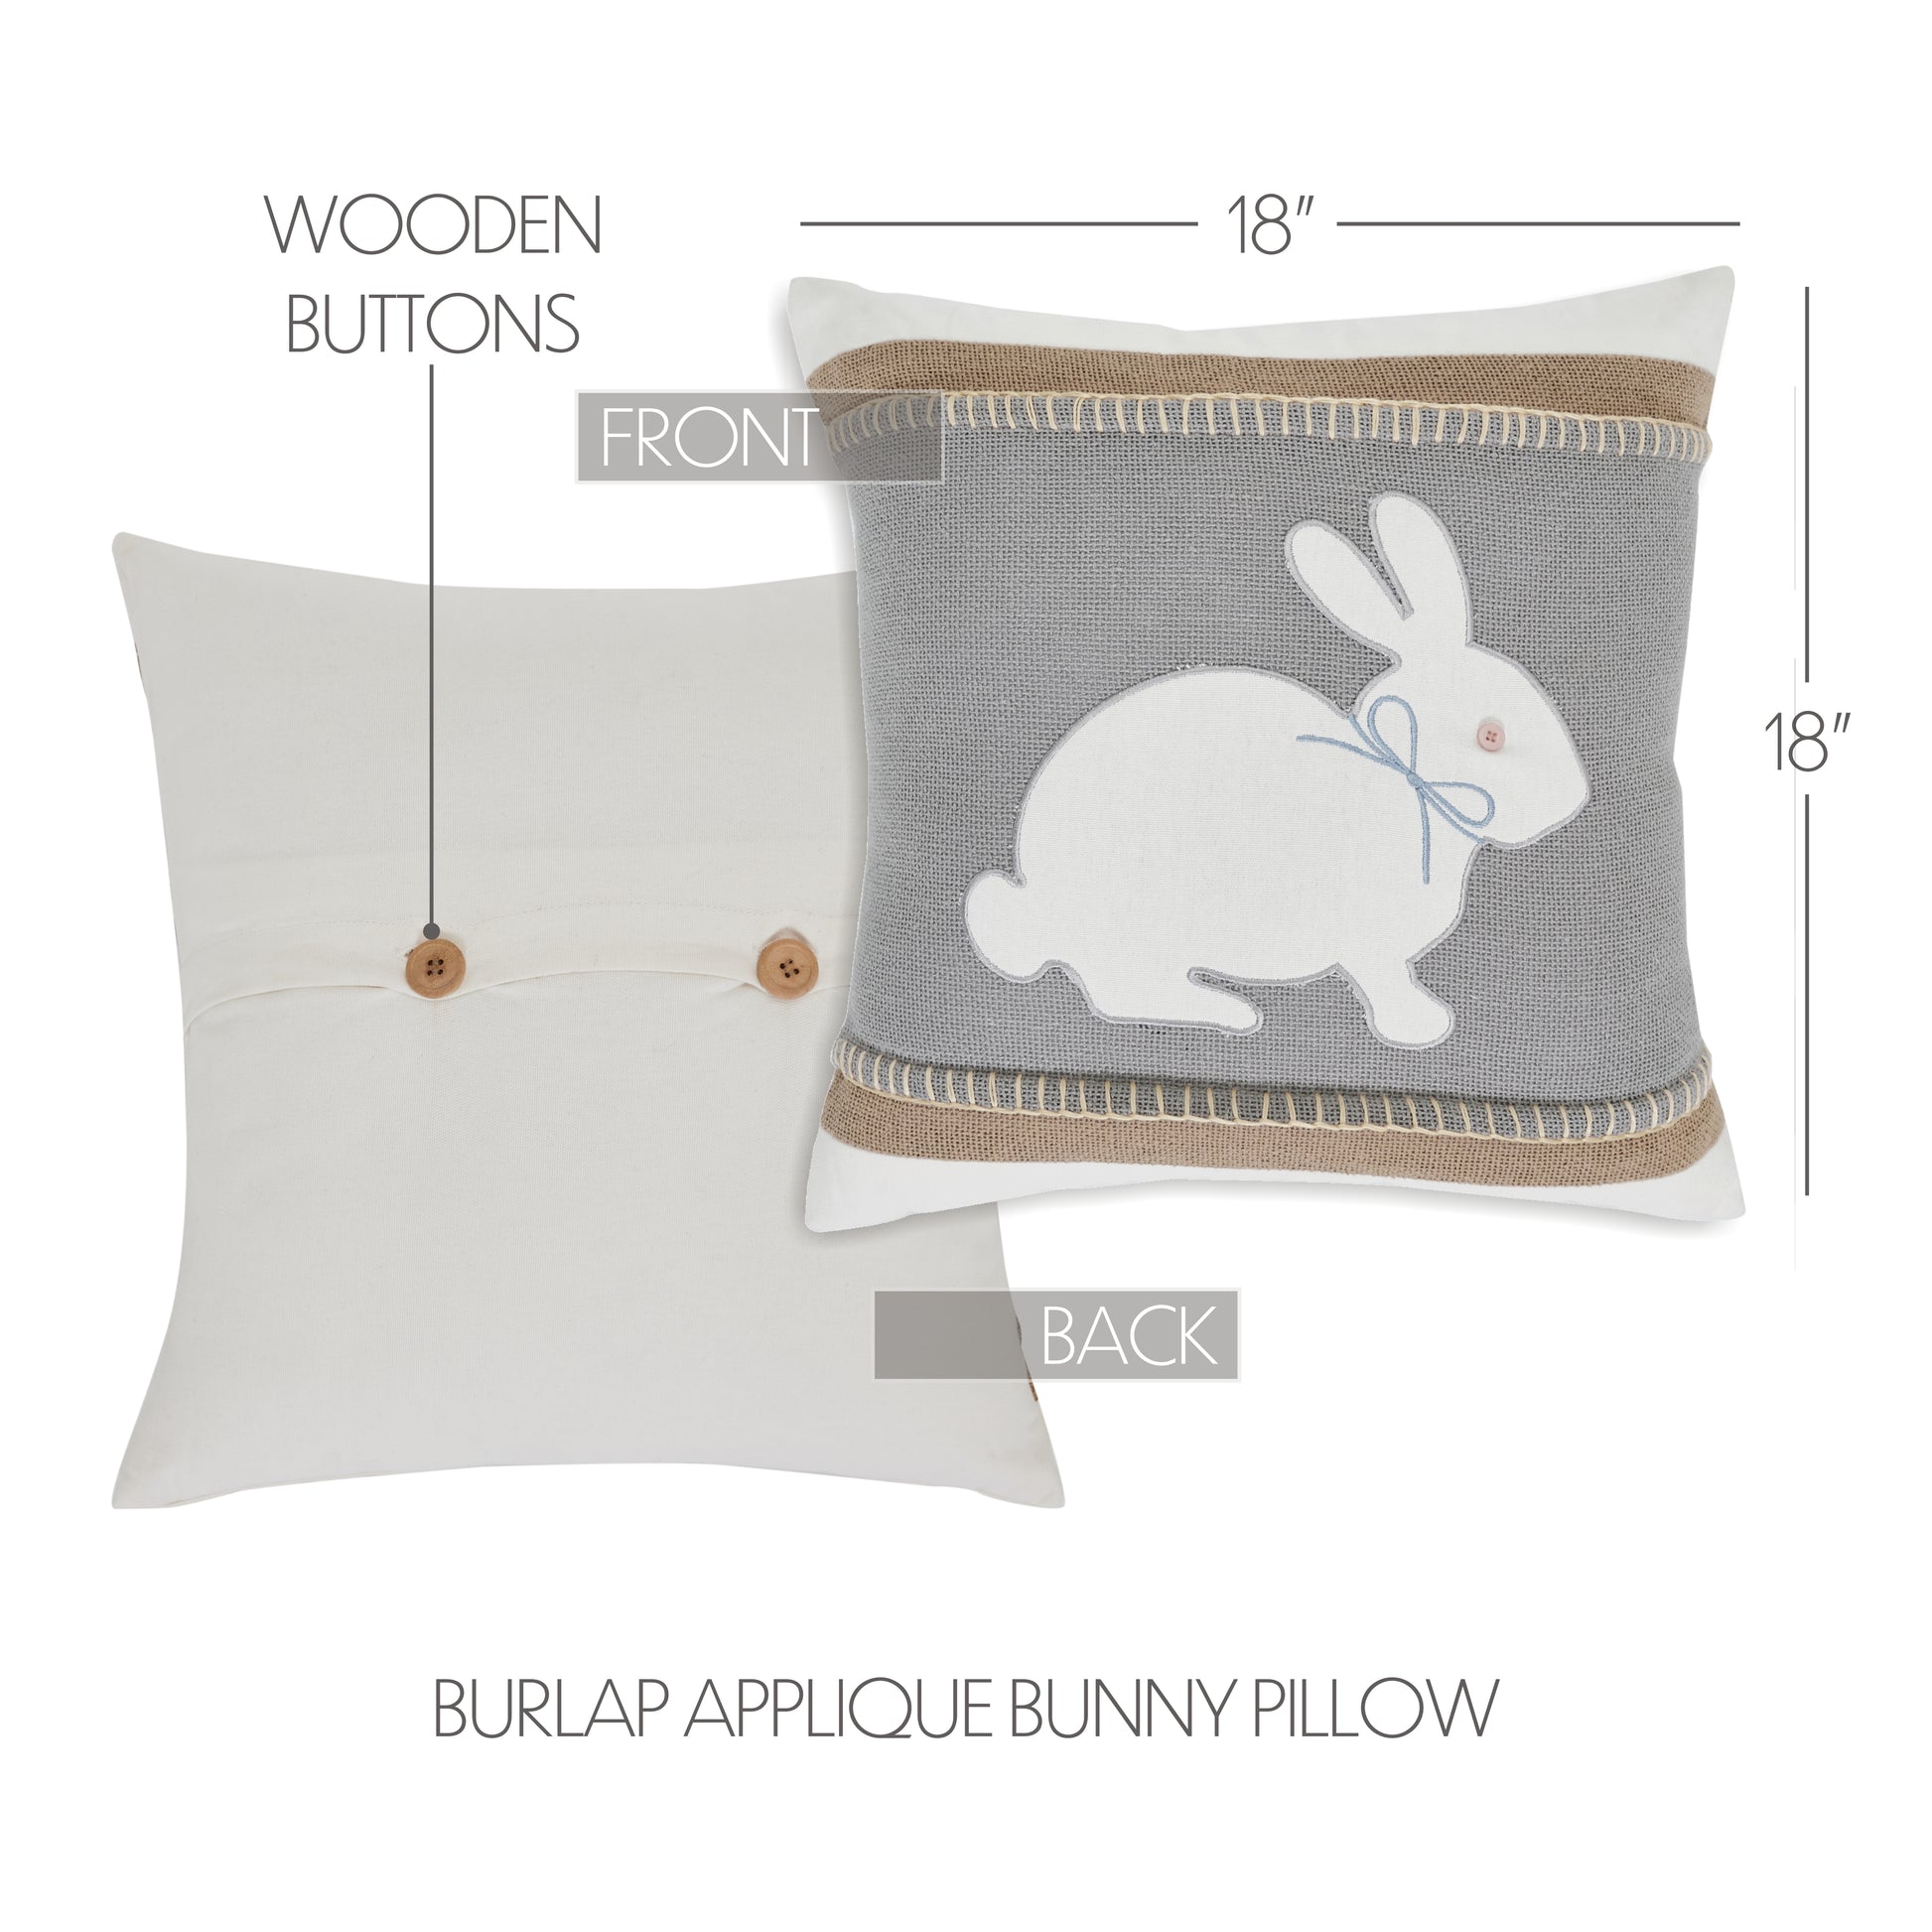 81149-Burlap-Applique-Bunny-Pillow-18x18-image-1